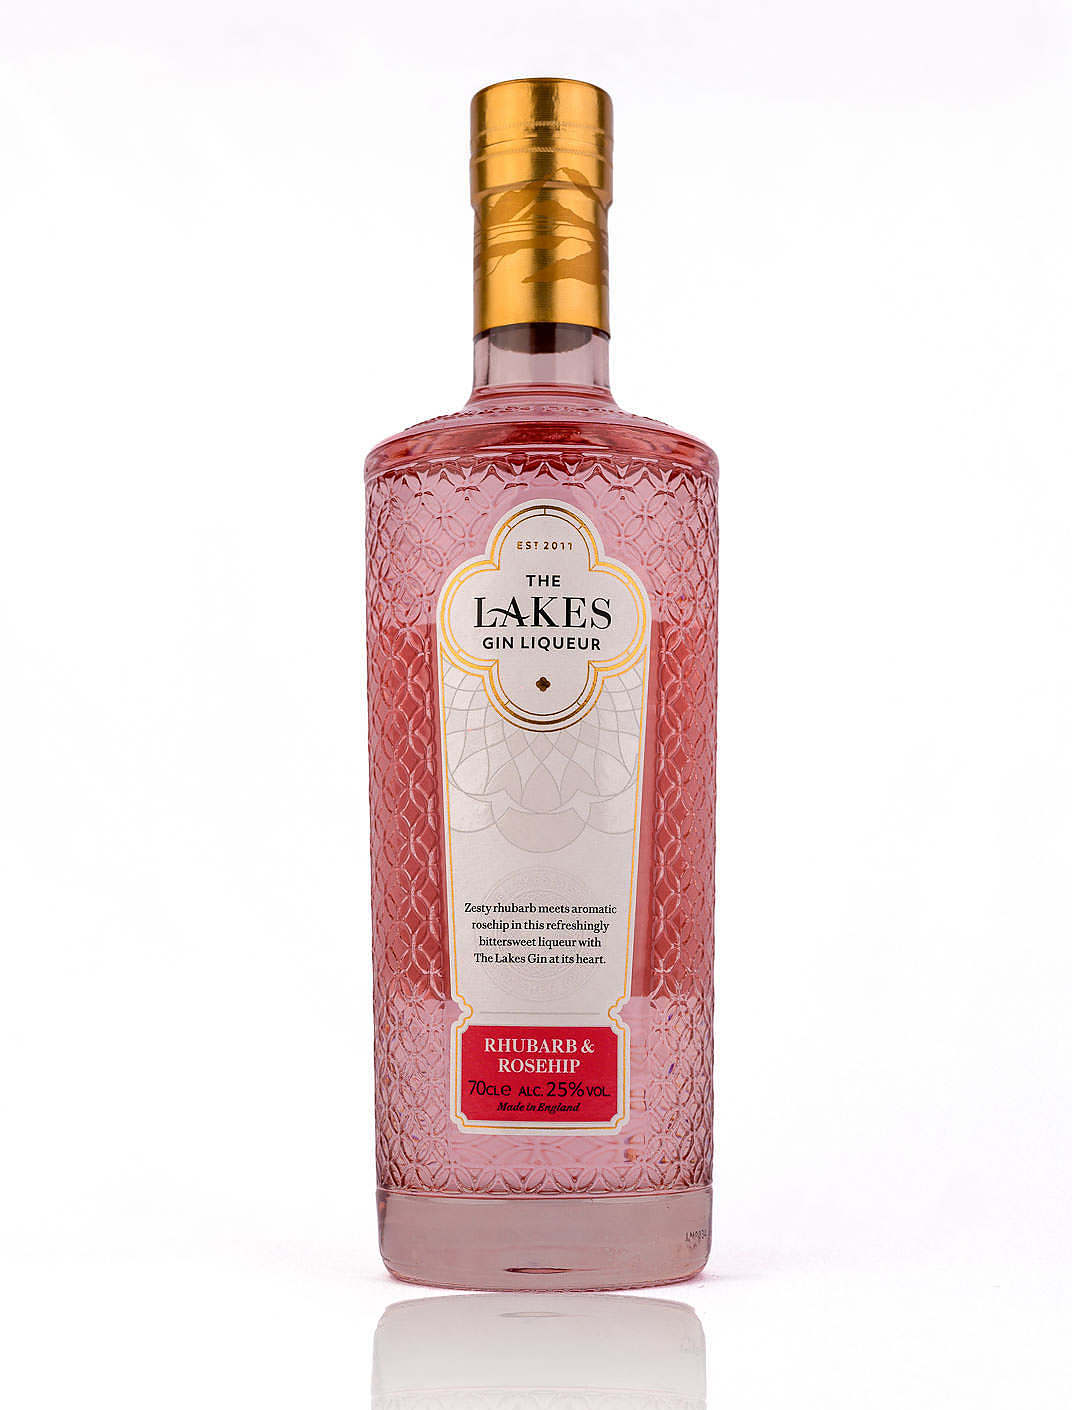 Rhubarb & Ginstitute - The Lakes Rosehip Liqueur Durham Gin -